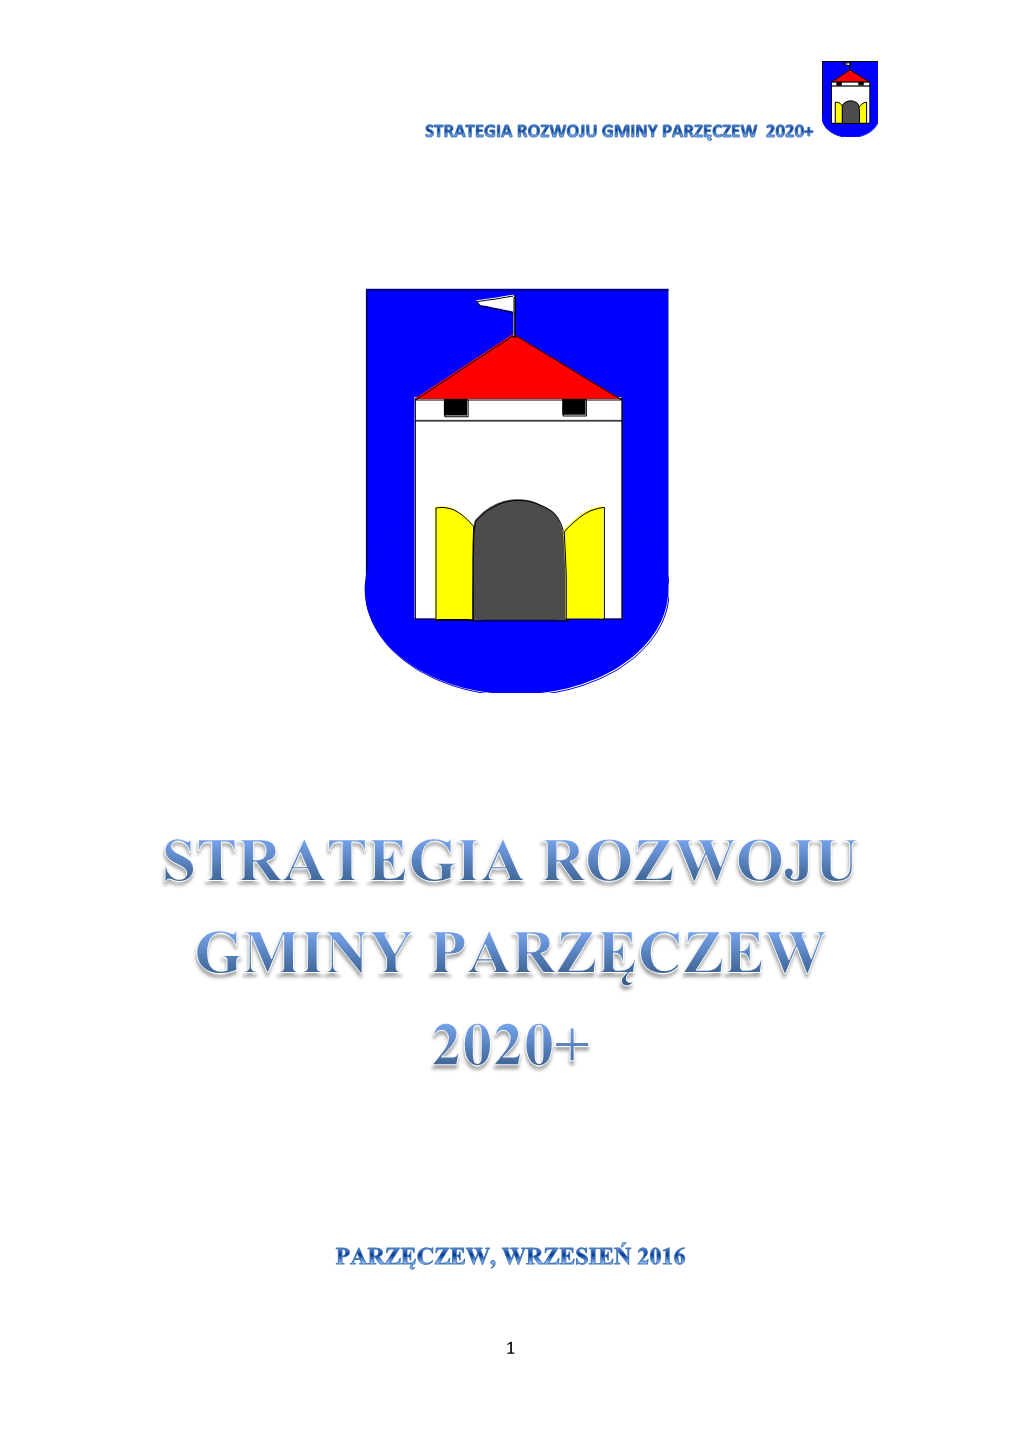 Strategia Rozwoju Gminy Parzęczew 2020+